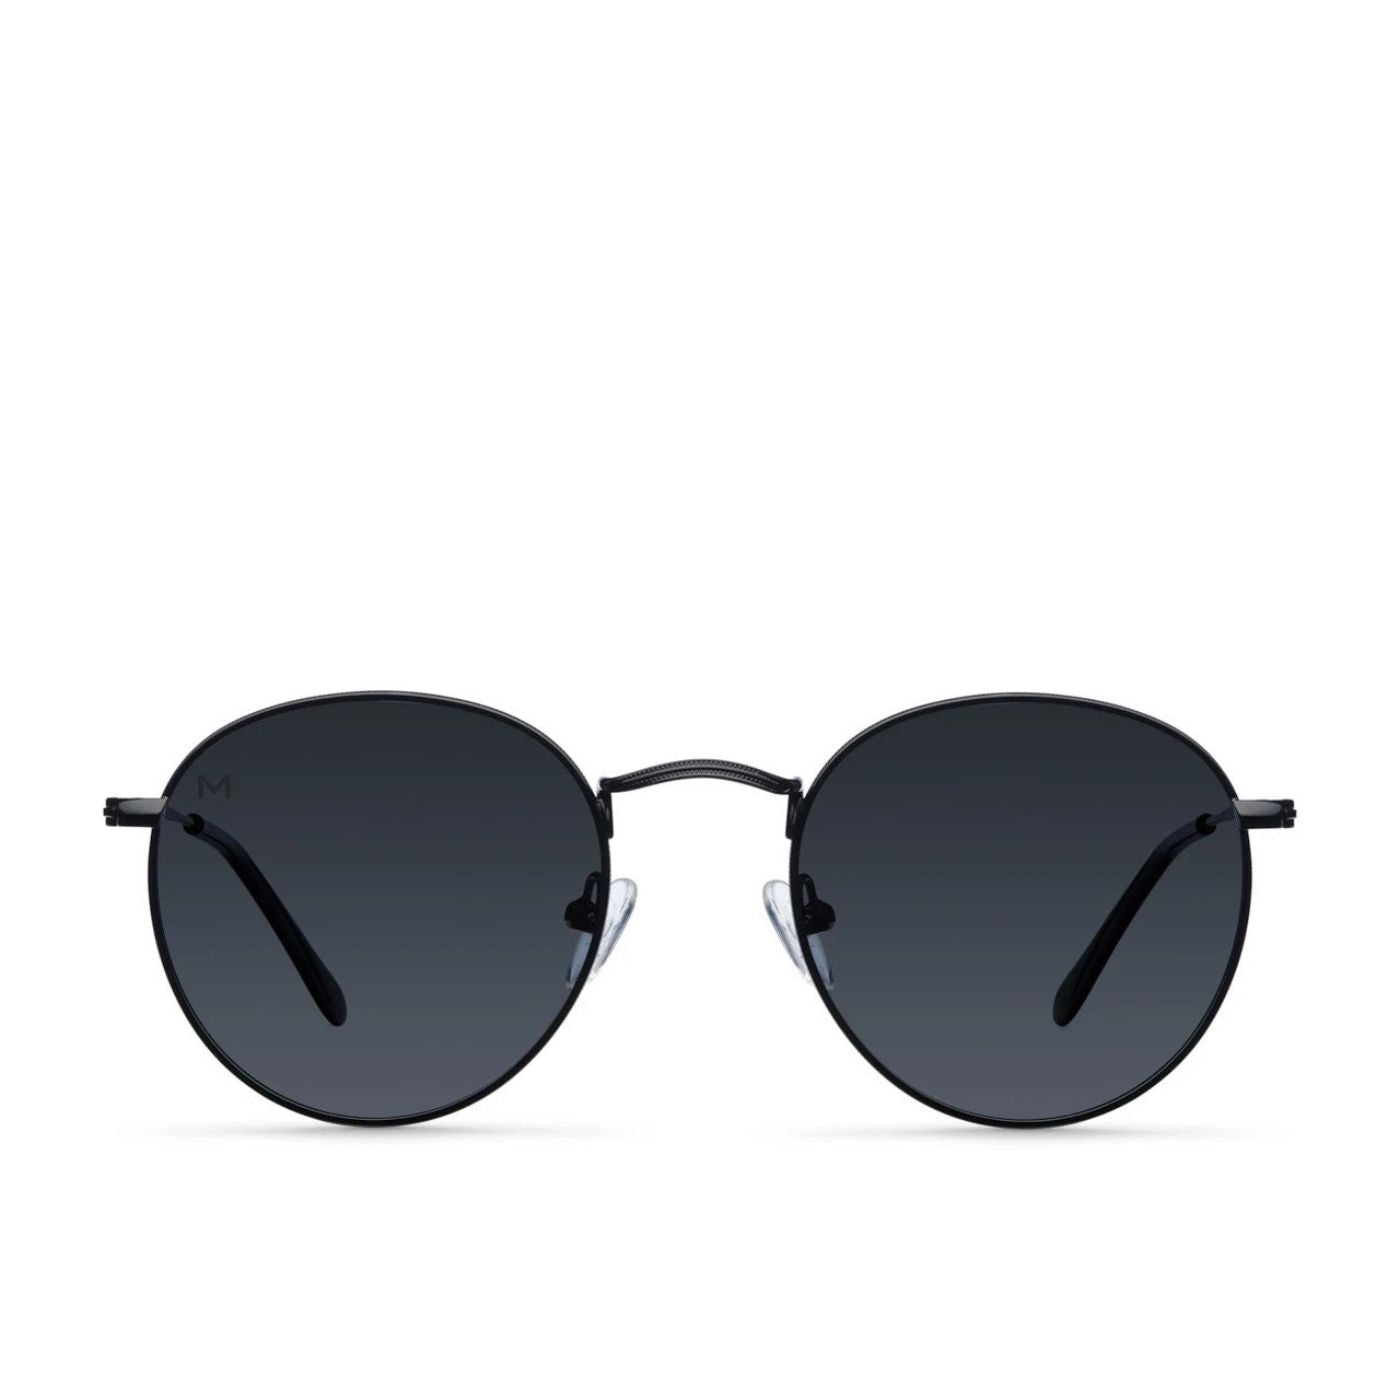 Yster All Black Meller Sunglasses